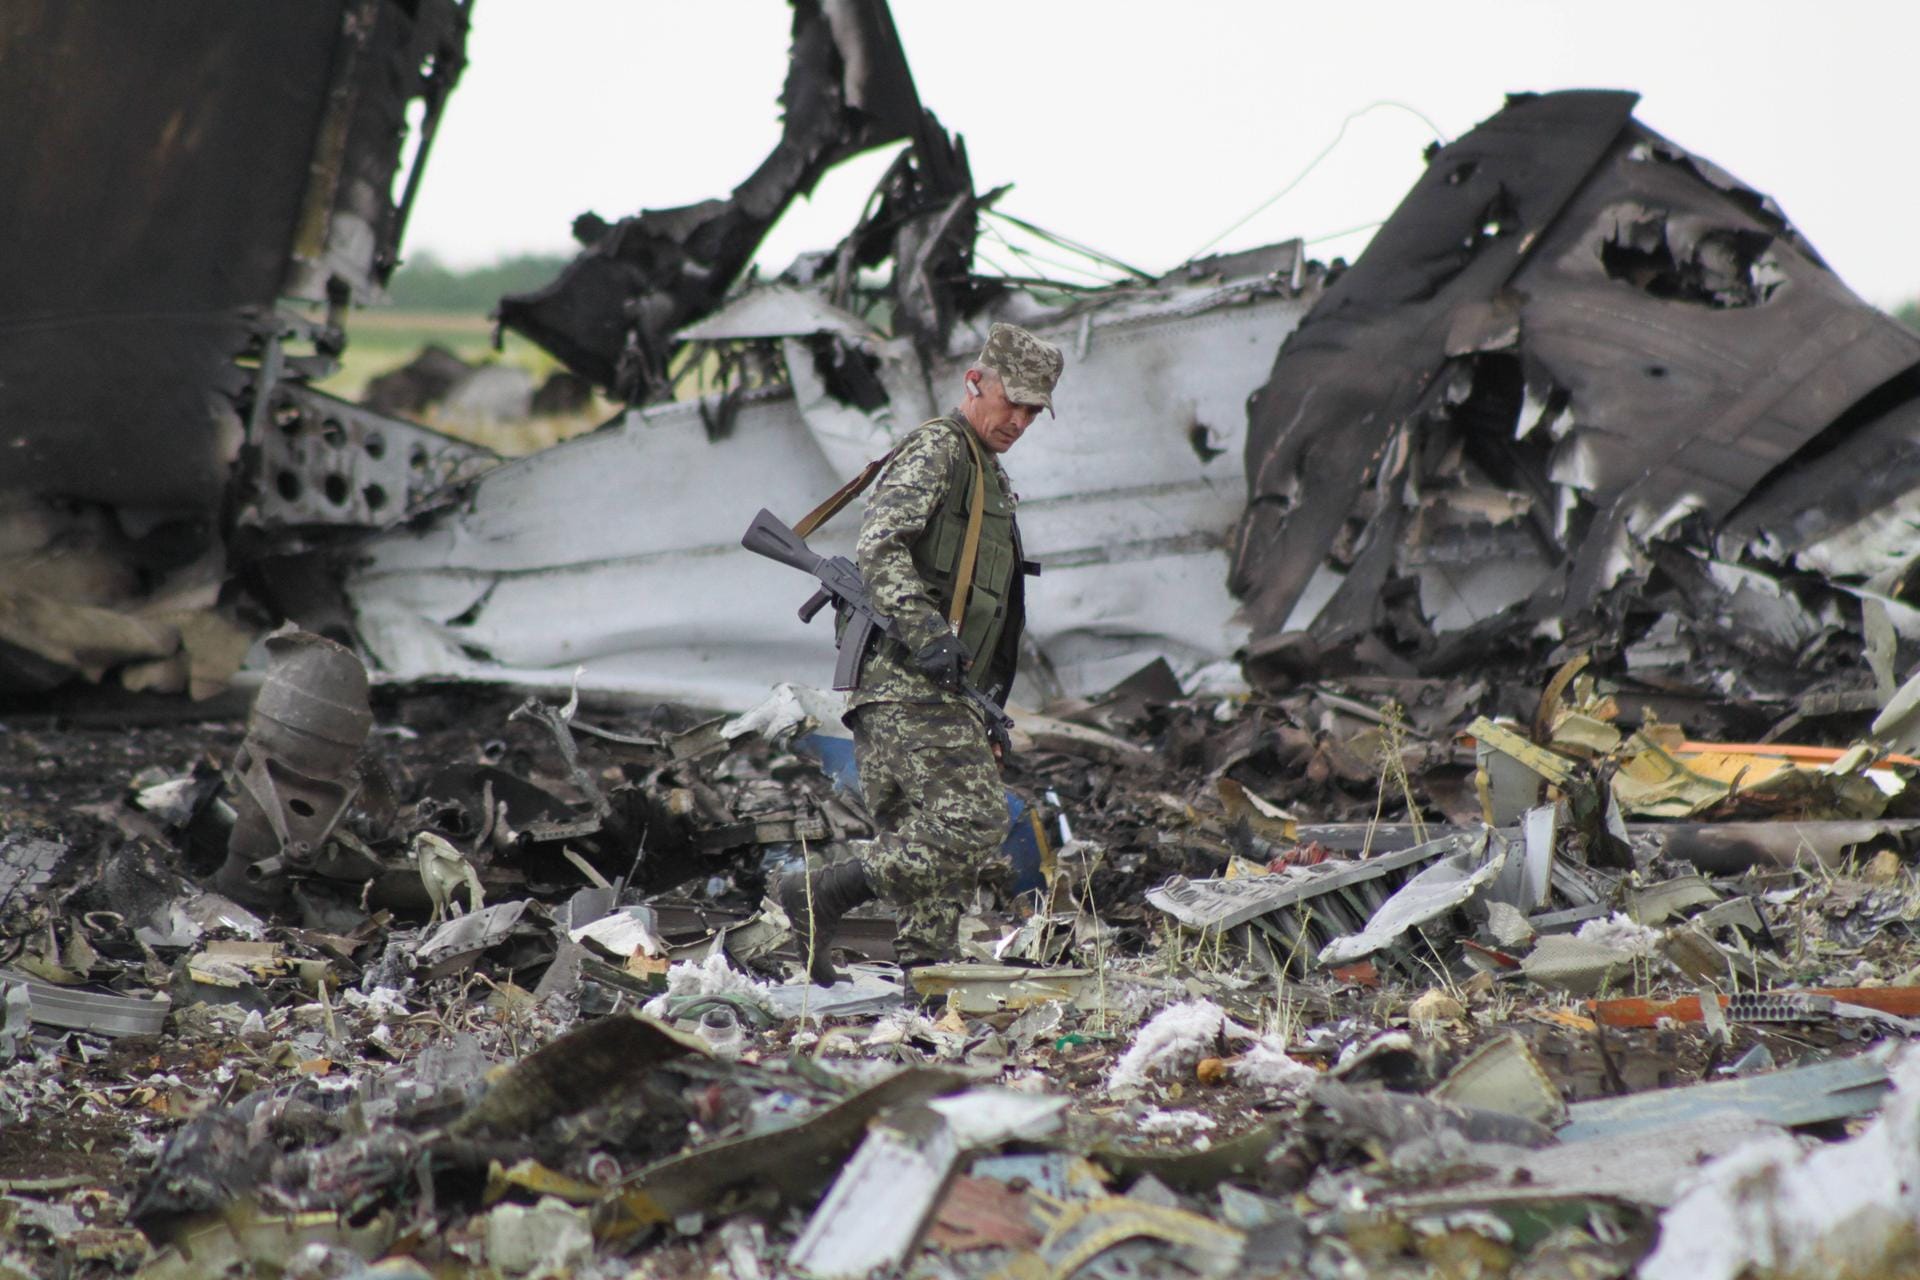 Juni 2014: In der Ostukraine schießen Rebellen ein Militärflugzeug beim nächtlichen Landemanöver auf den Flughafen von Luhansk ab. Alle 49 Soldaten an Bord kommen ums Leben.